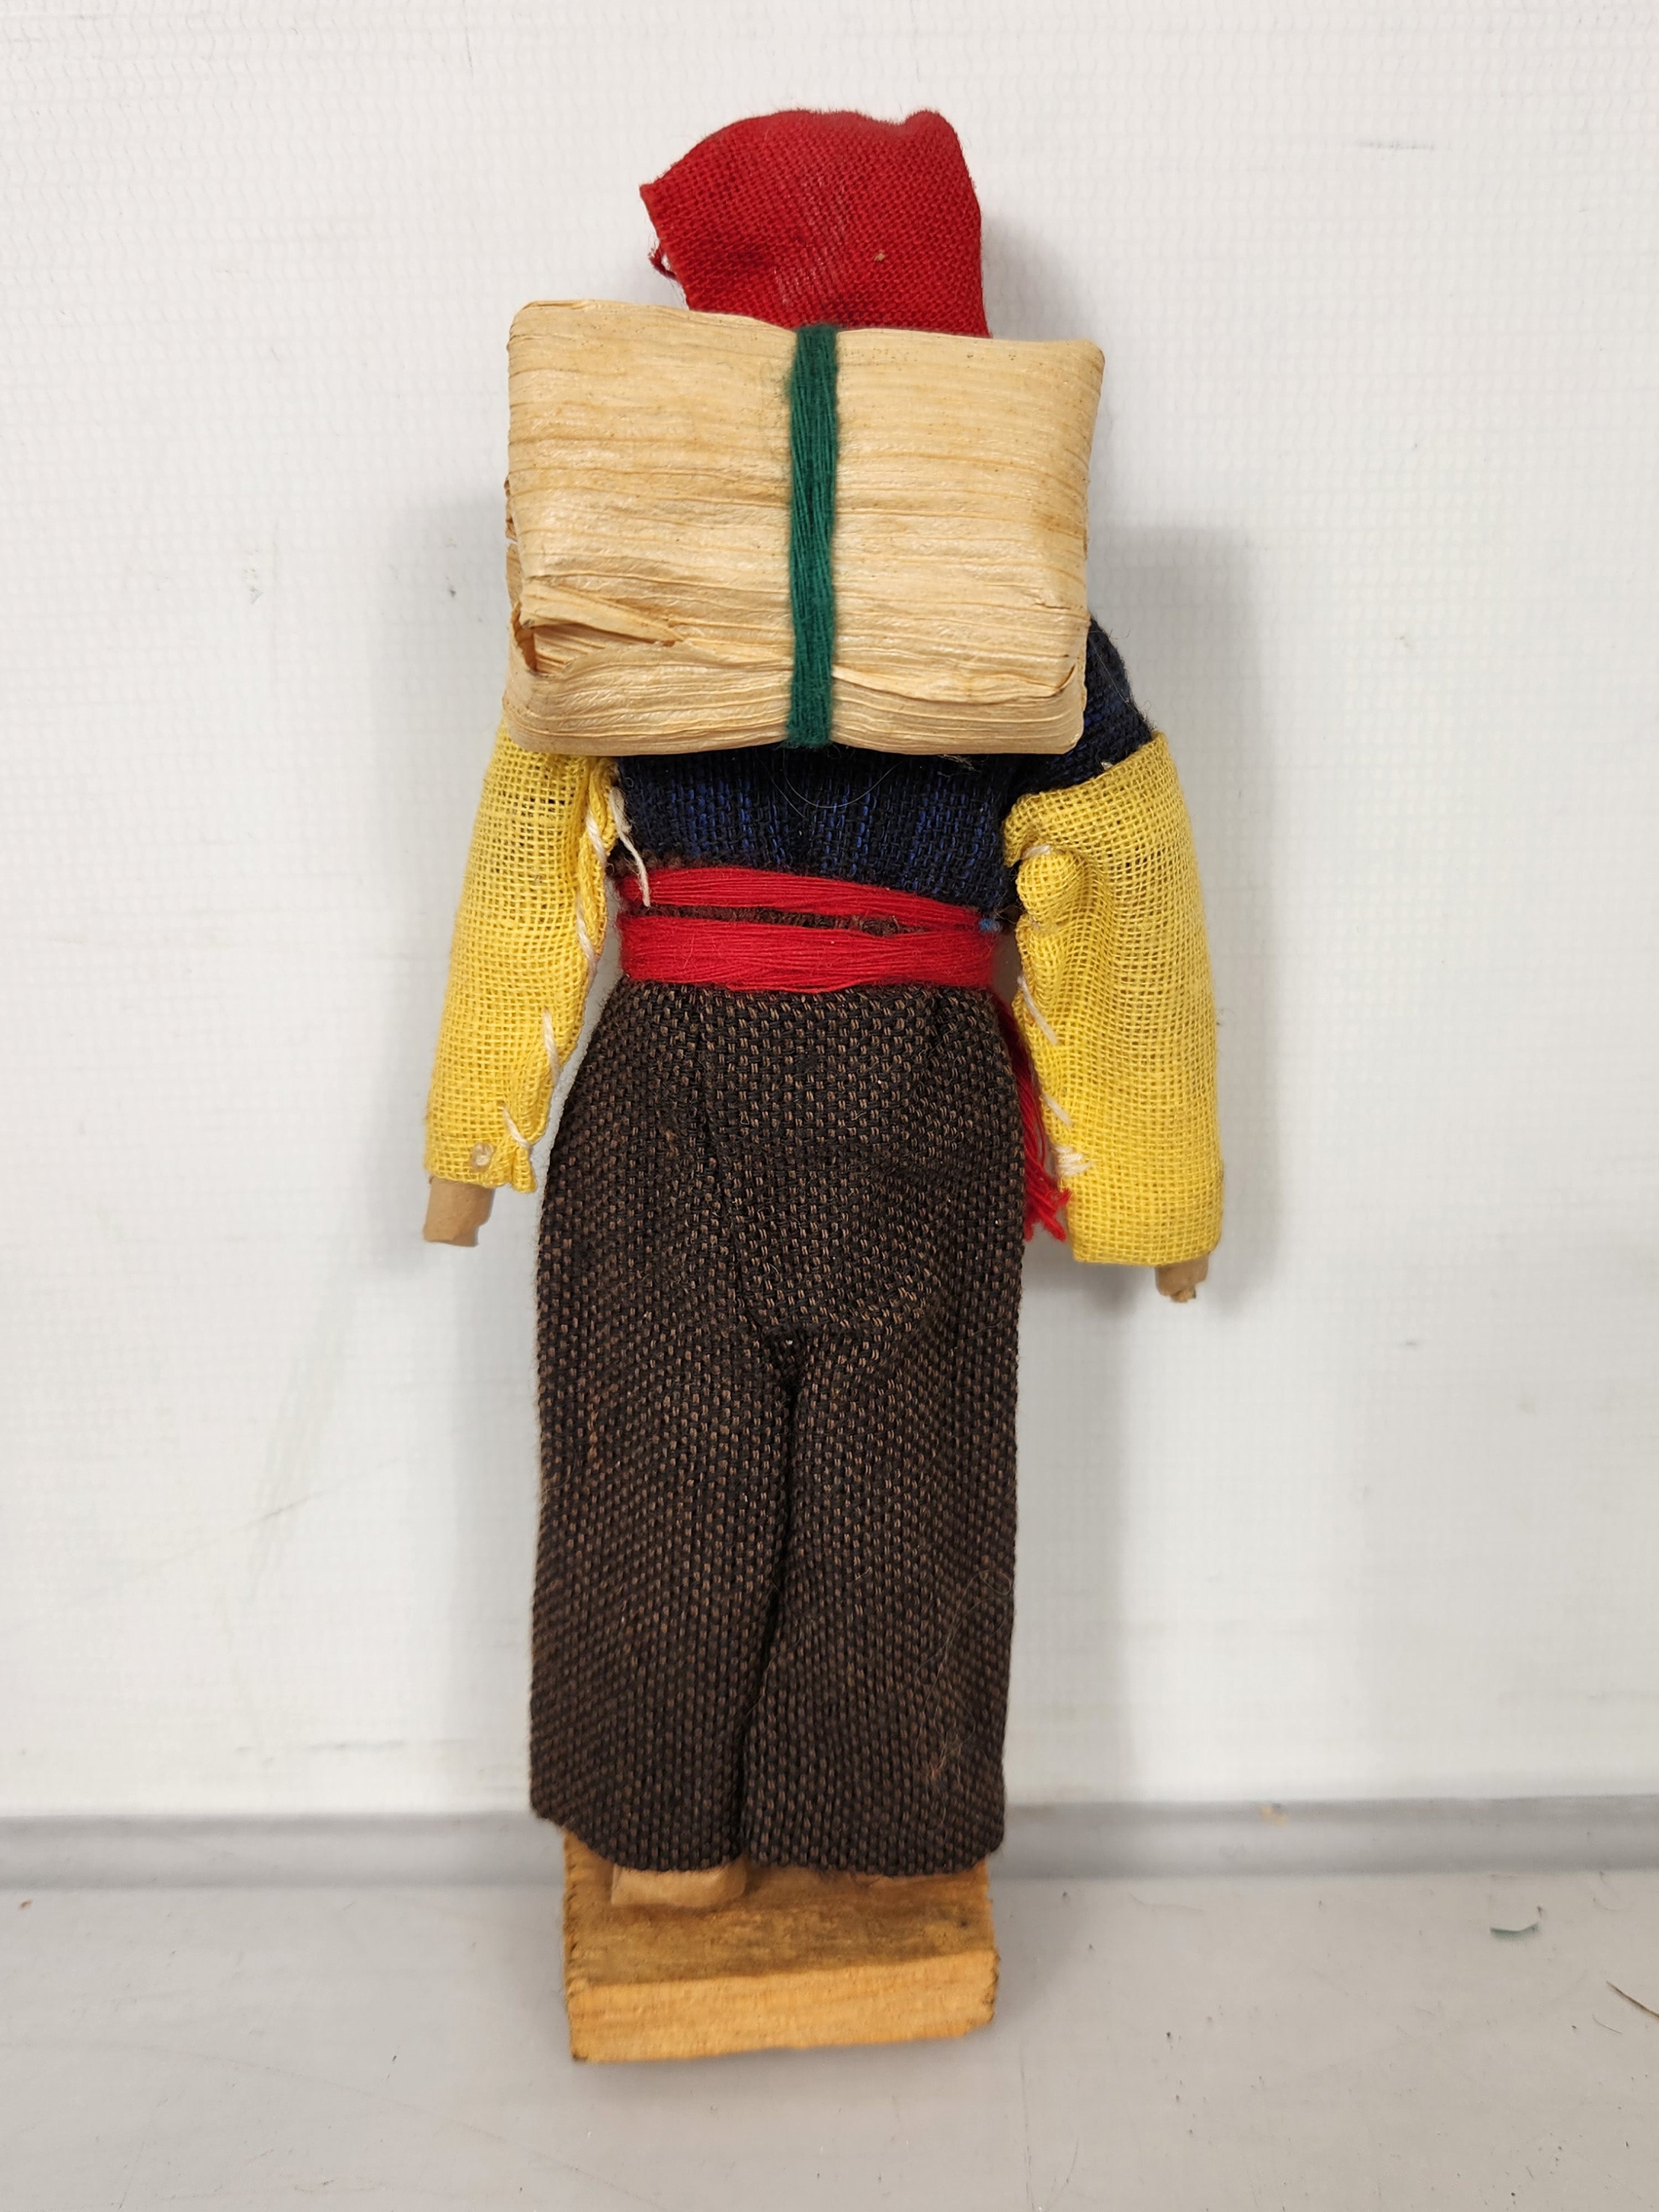 South American Cloth Folk Art Doll